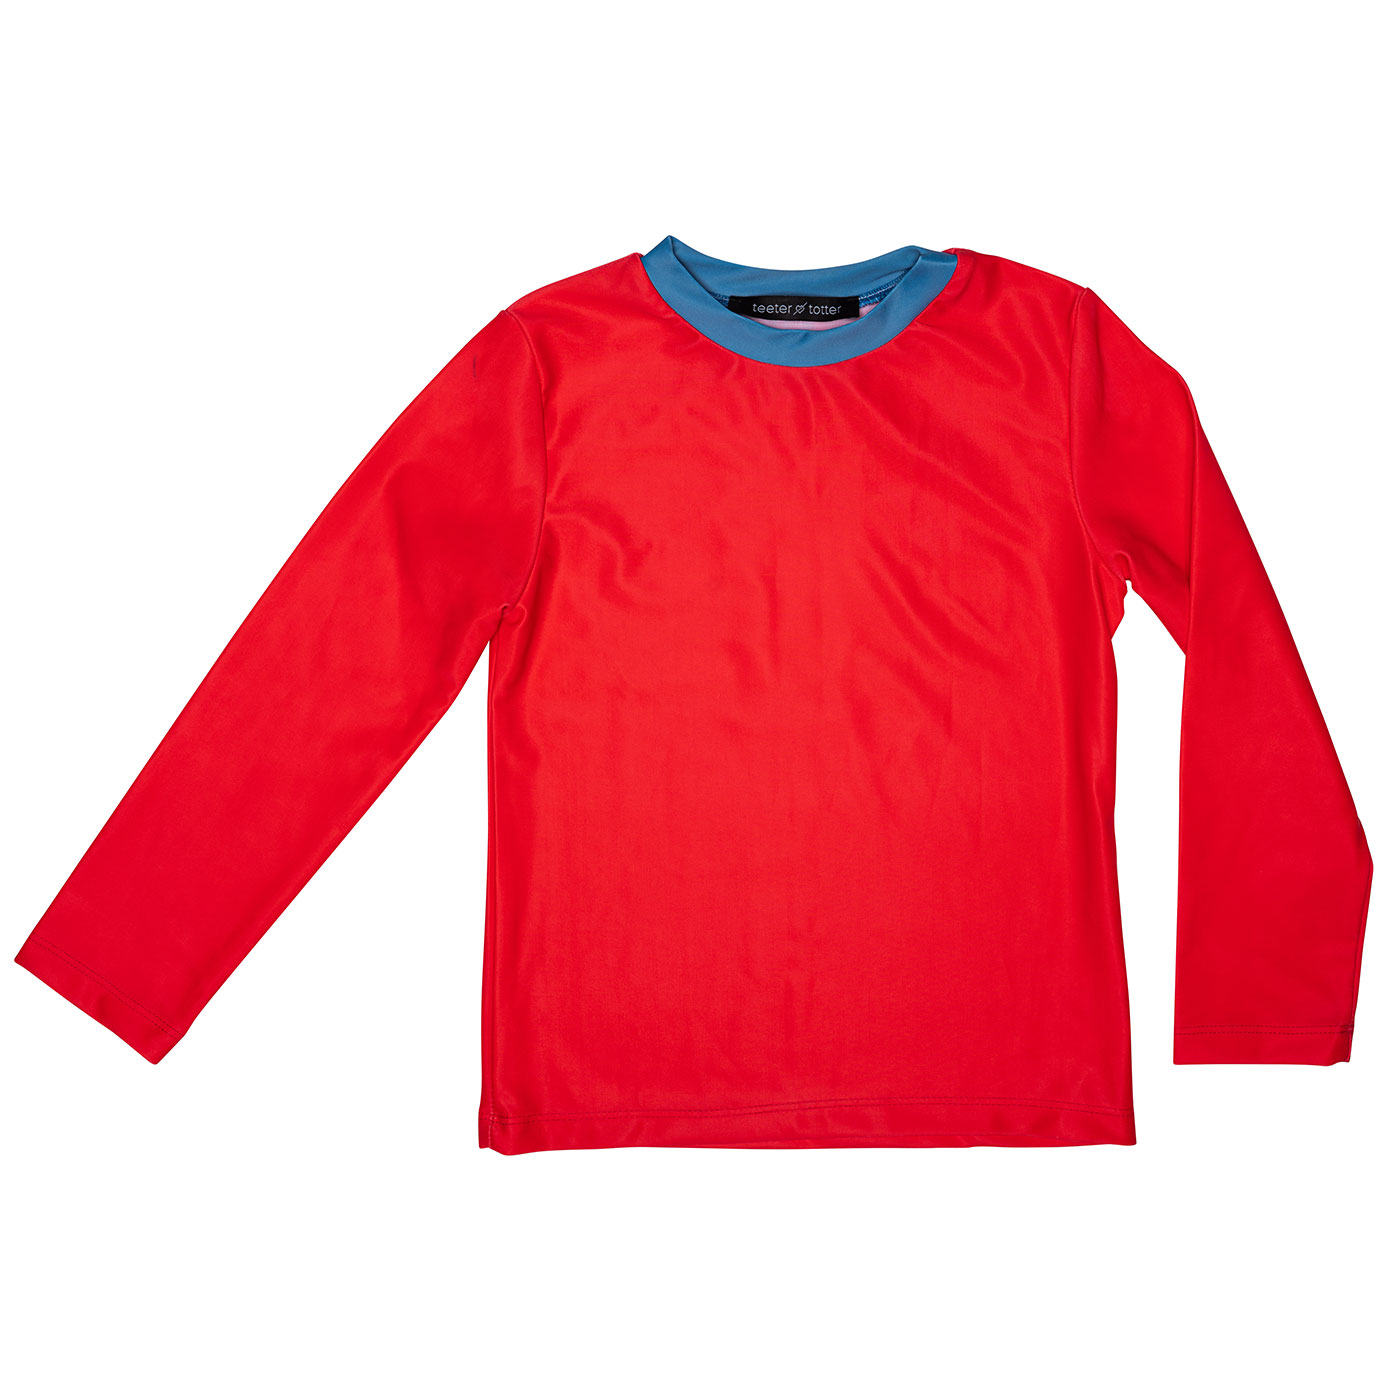 Παιδική Μπλούζα Προστασίας από τον Ήλιο Alexandros Red Blue